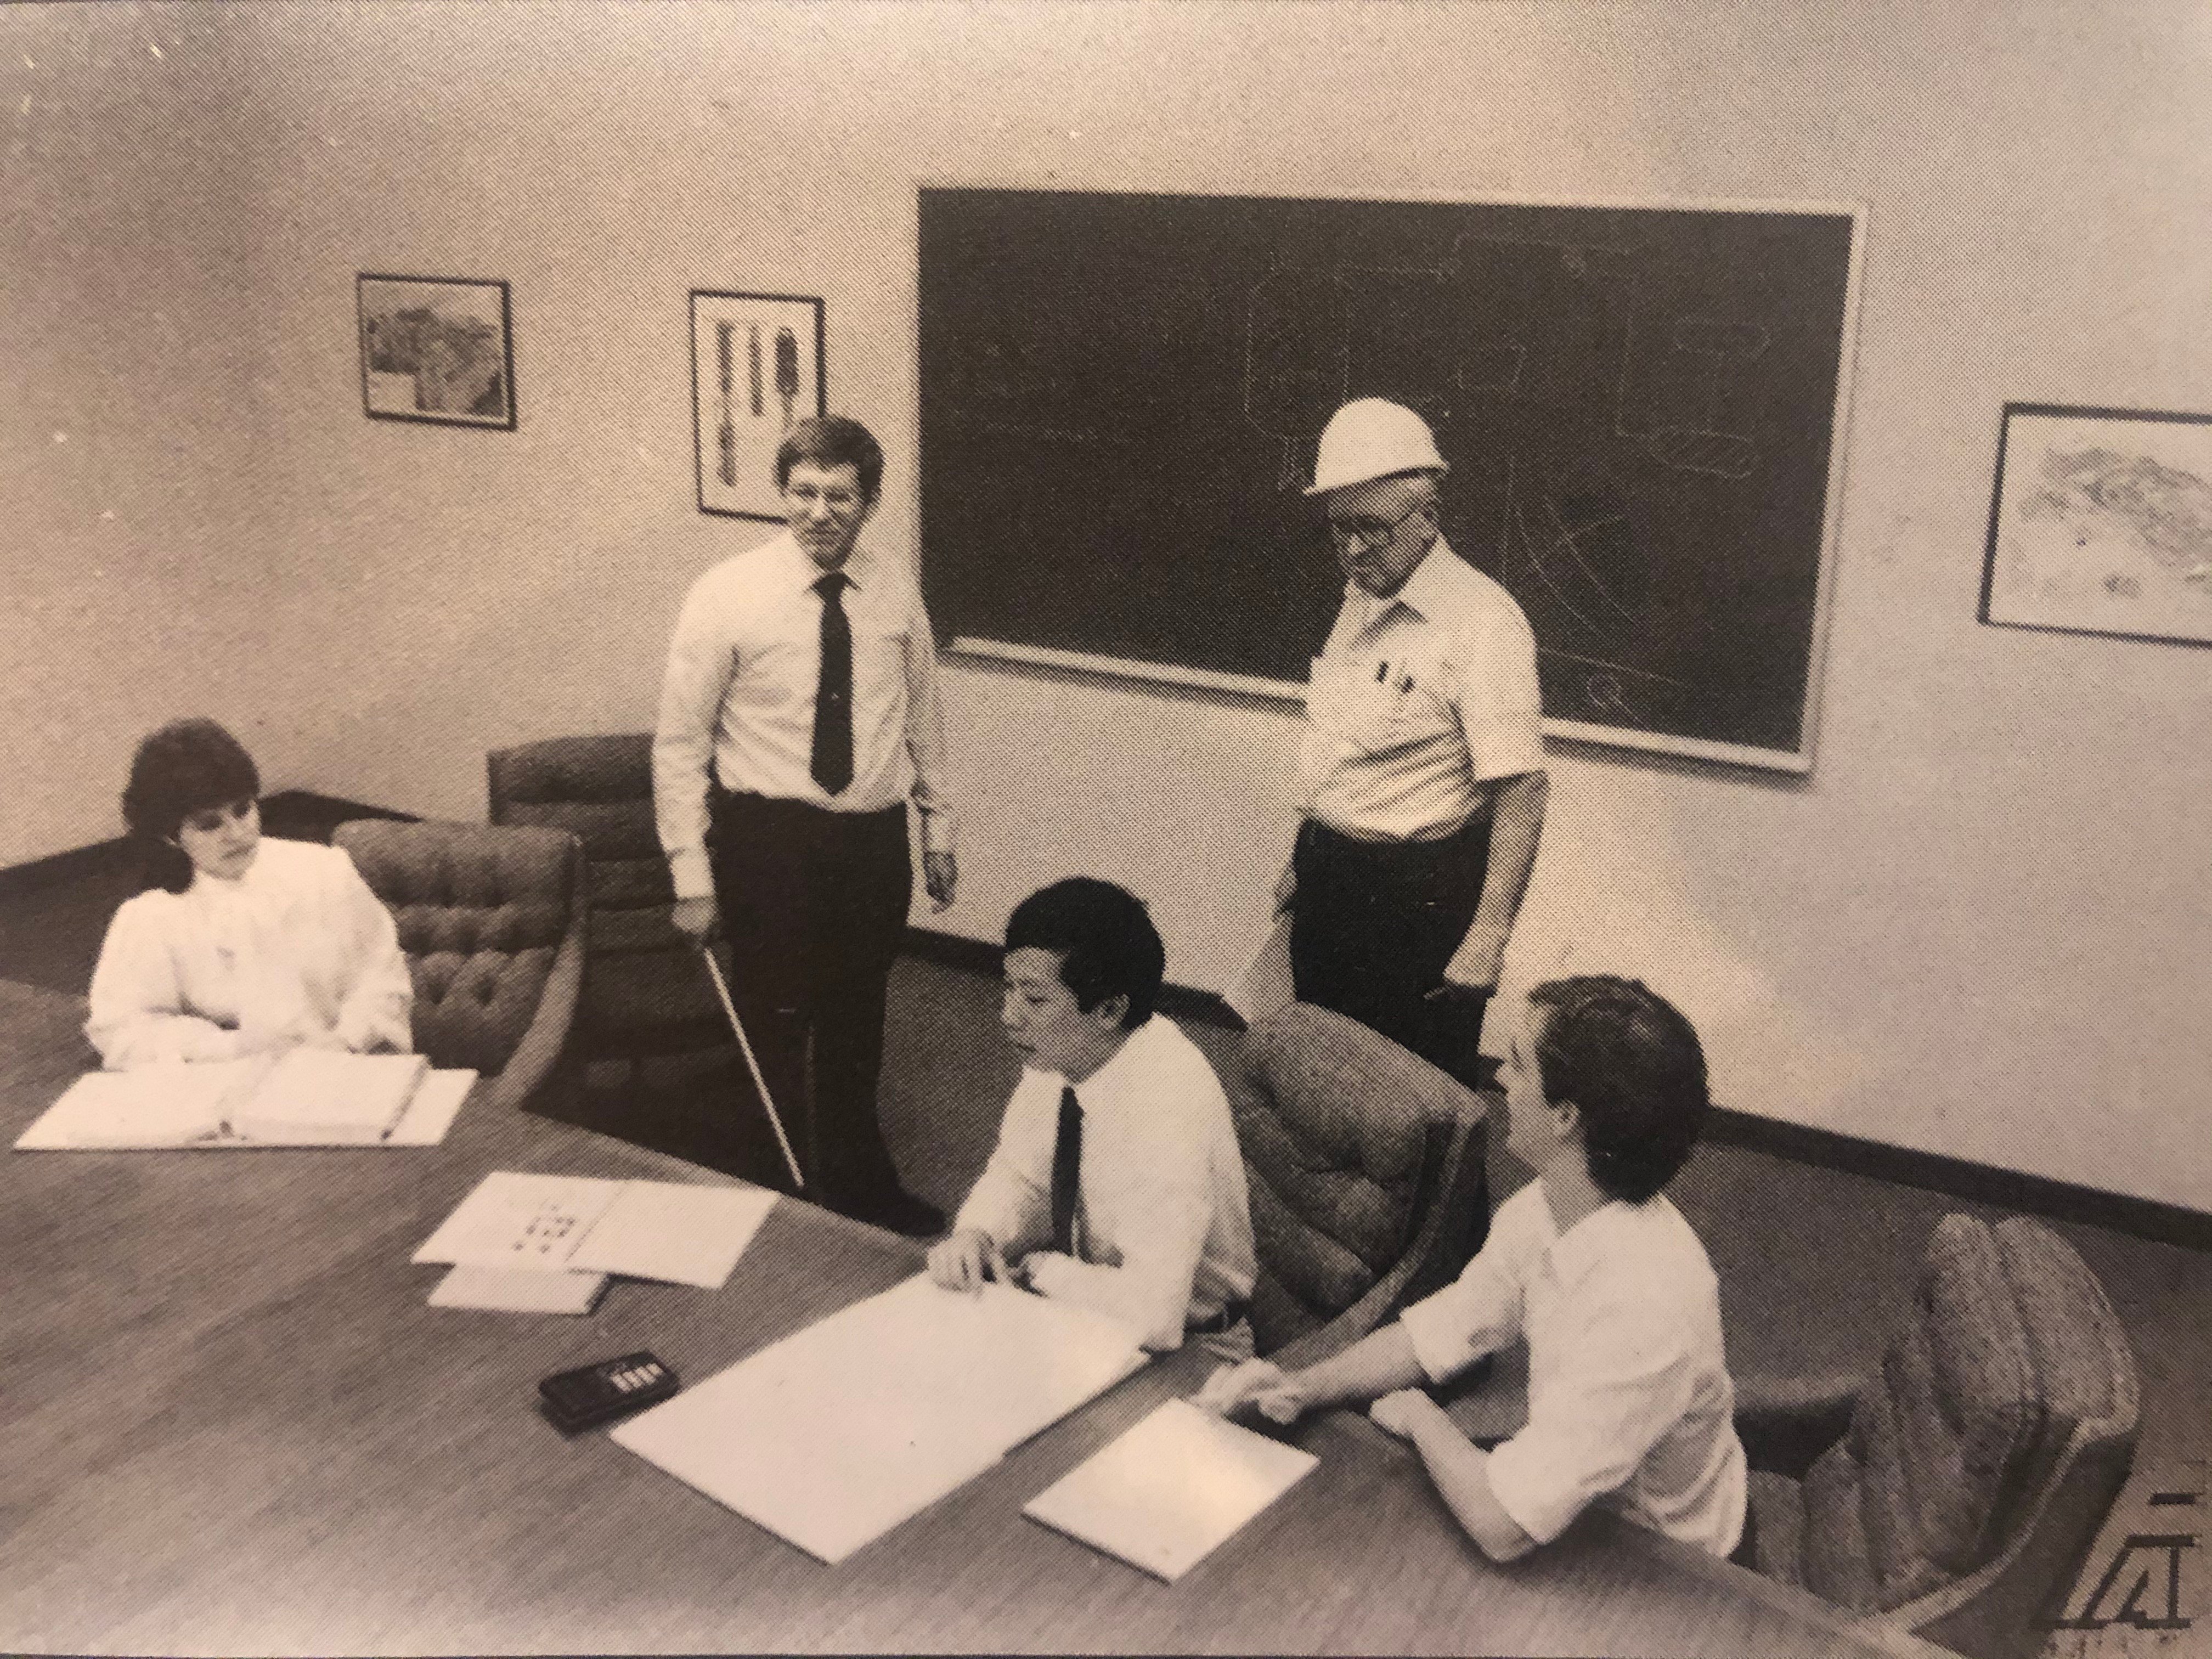 FAI staff around 1986